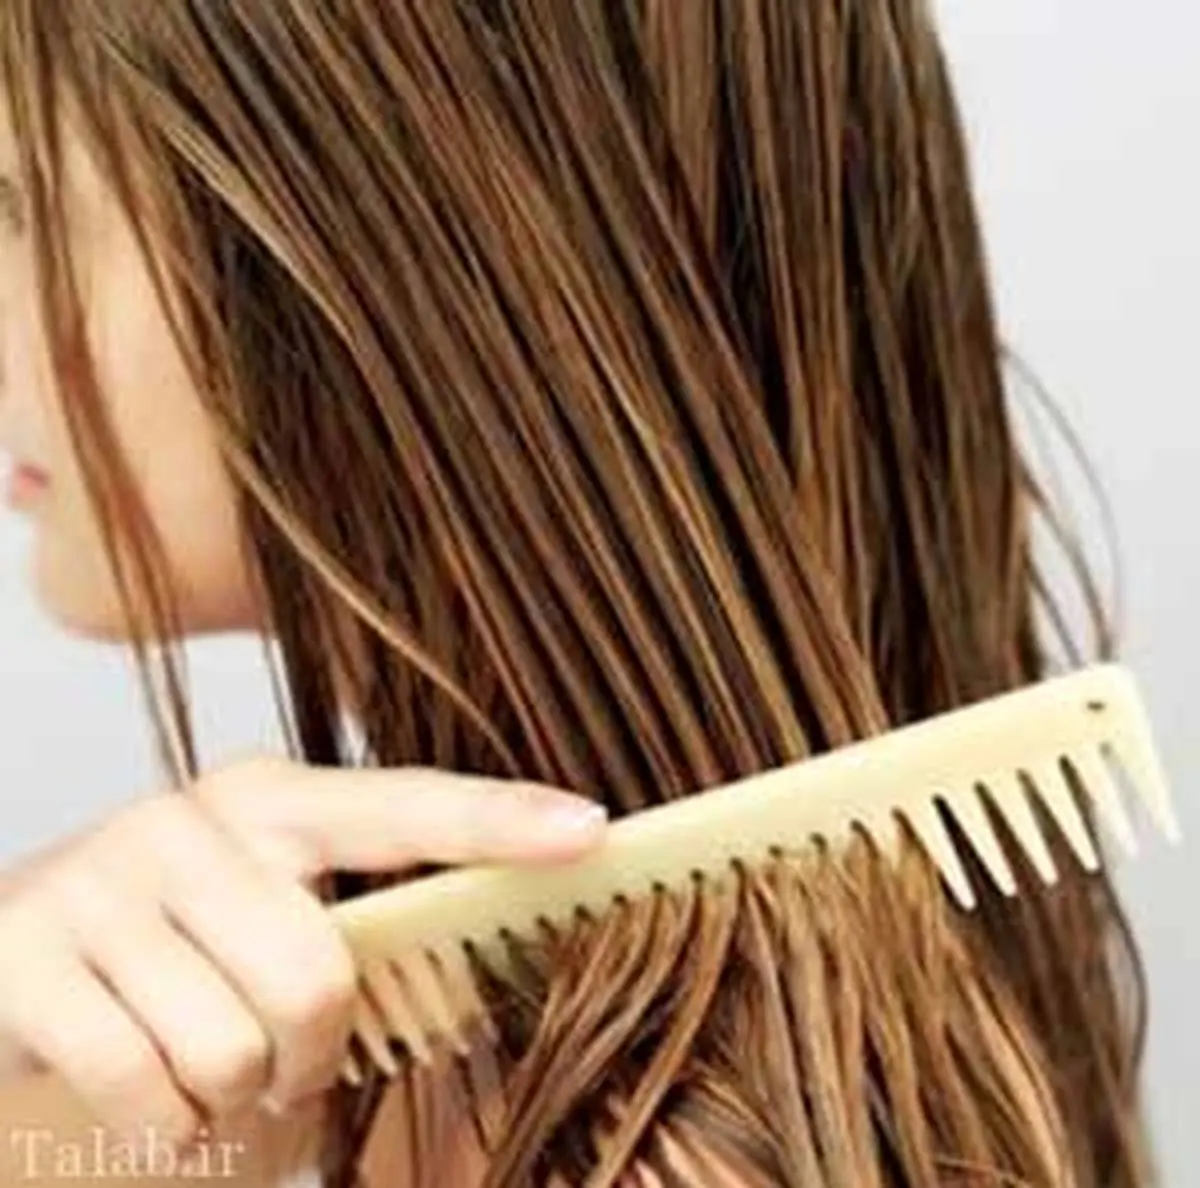 ۳ کاری که اگر دختران انجام دهند جذابیت موهایشان را از دست می دهند